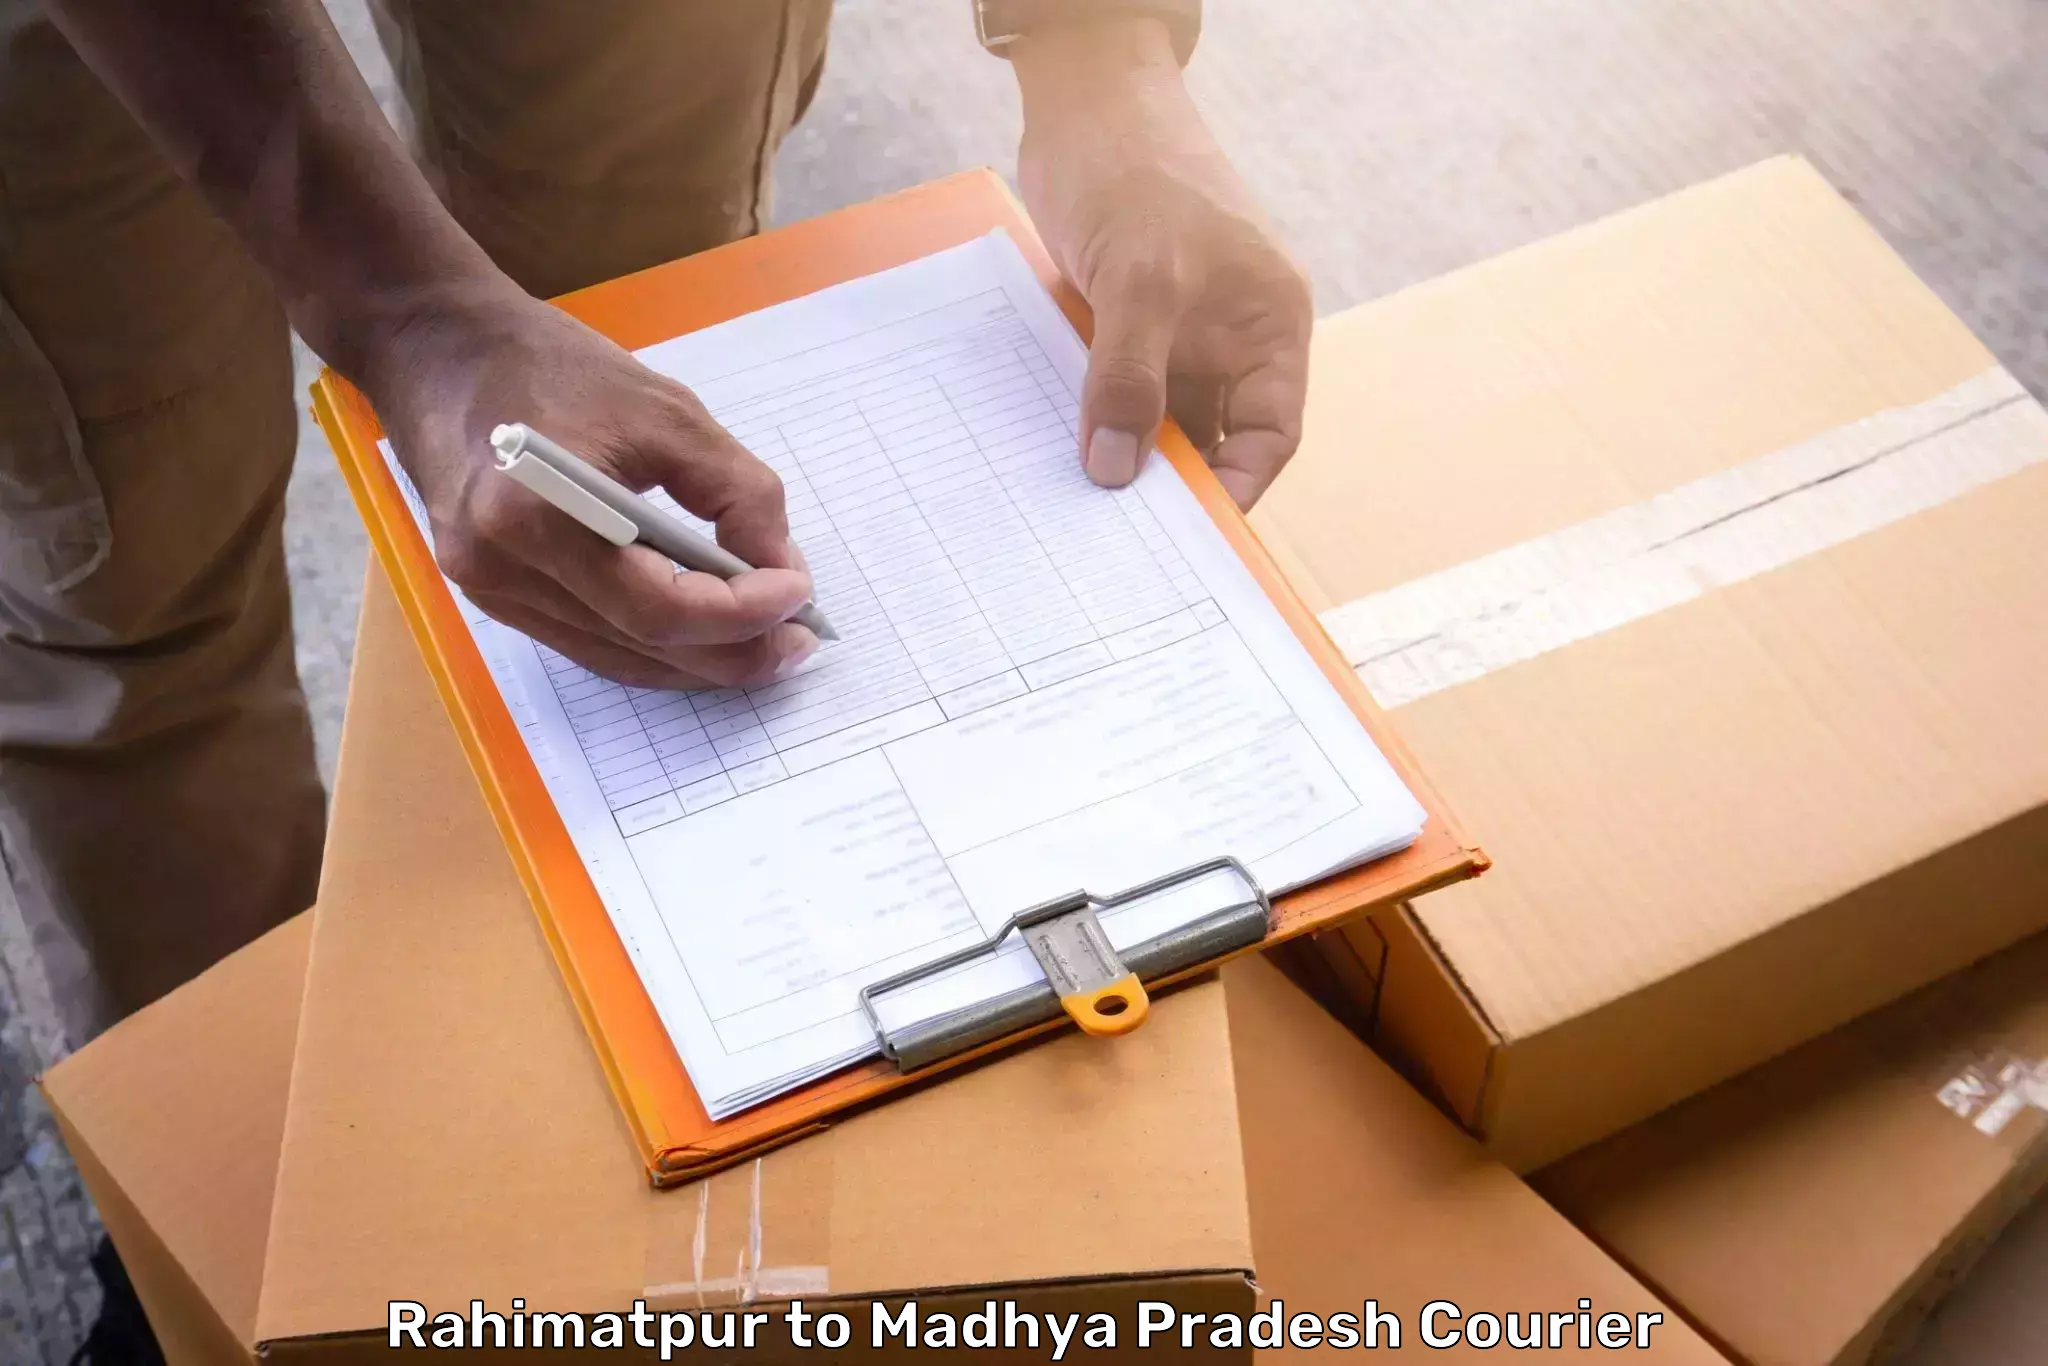 Luggage shipping specialists Rahimatpur to Khajuraho